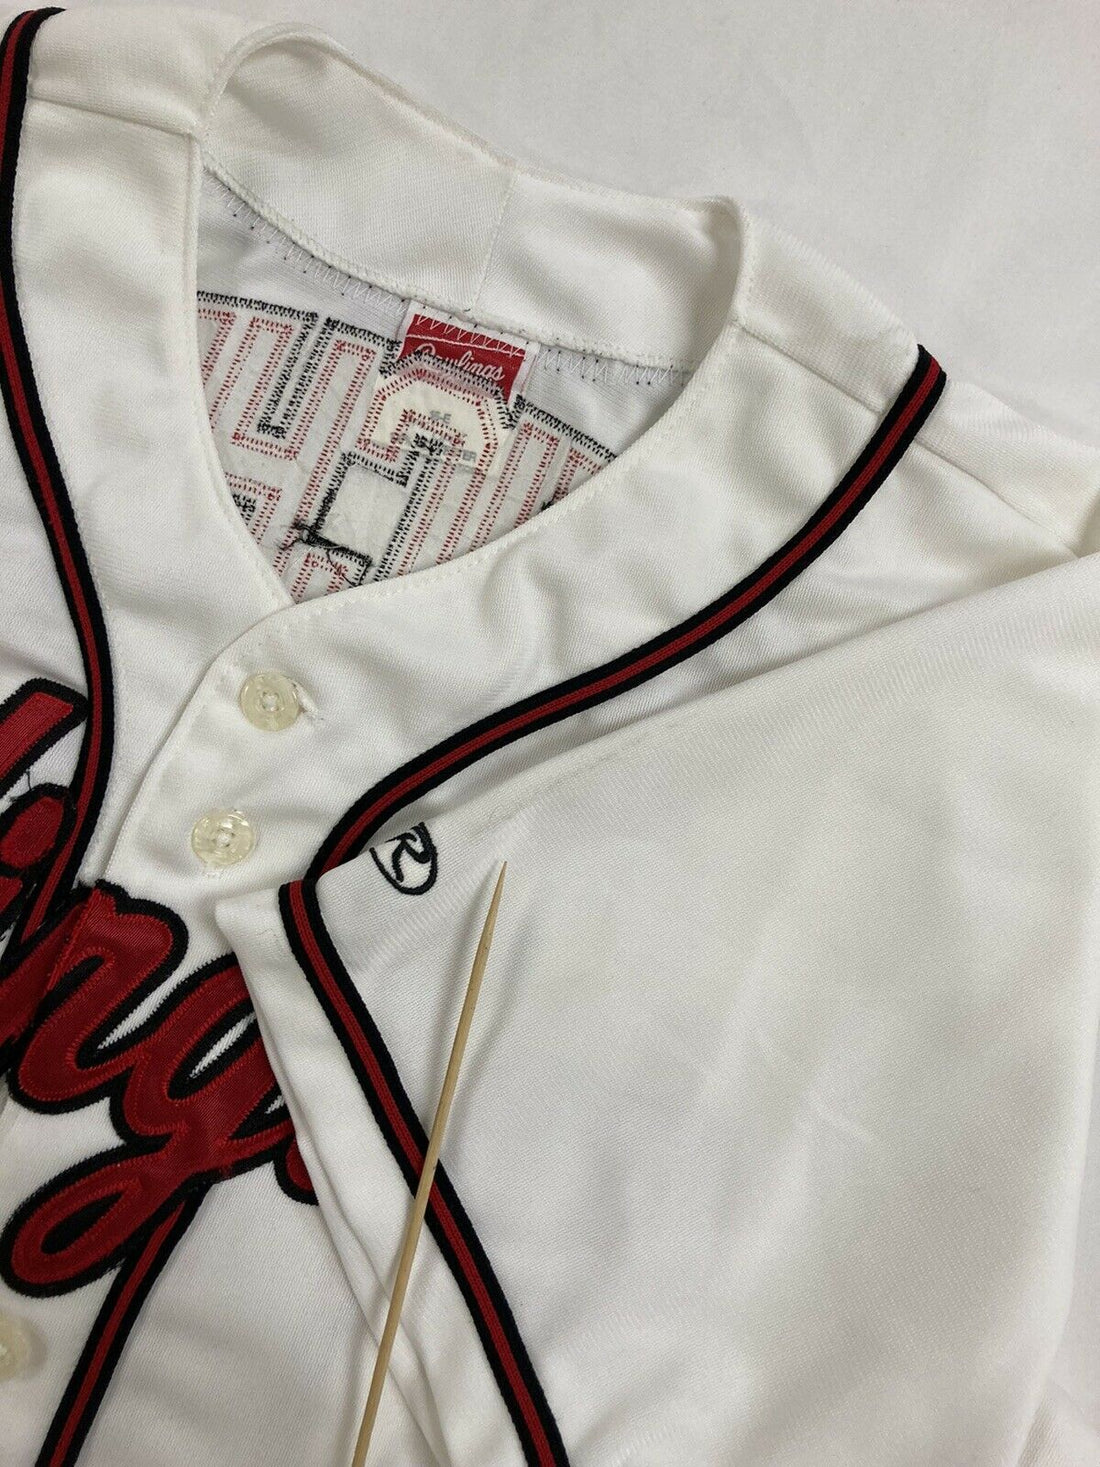 Reichel #17 Arlington Rawlings Baseball Jersey Size Large White Stitched Sewn